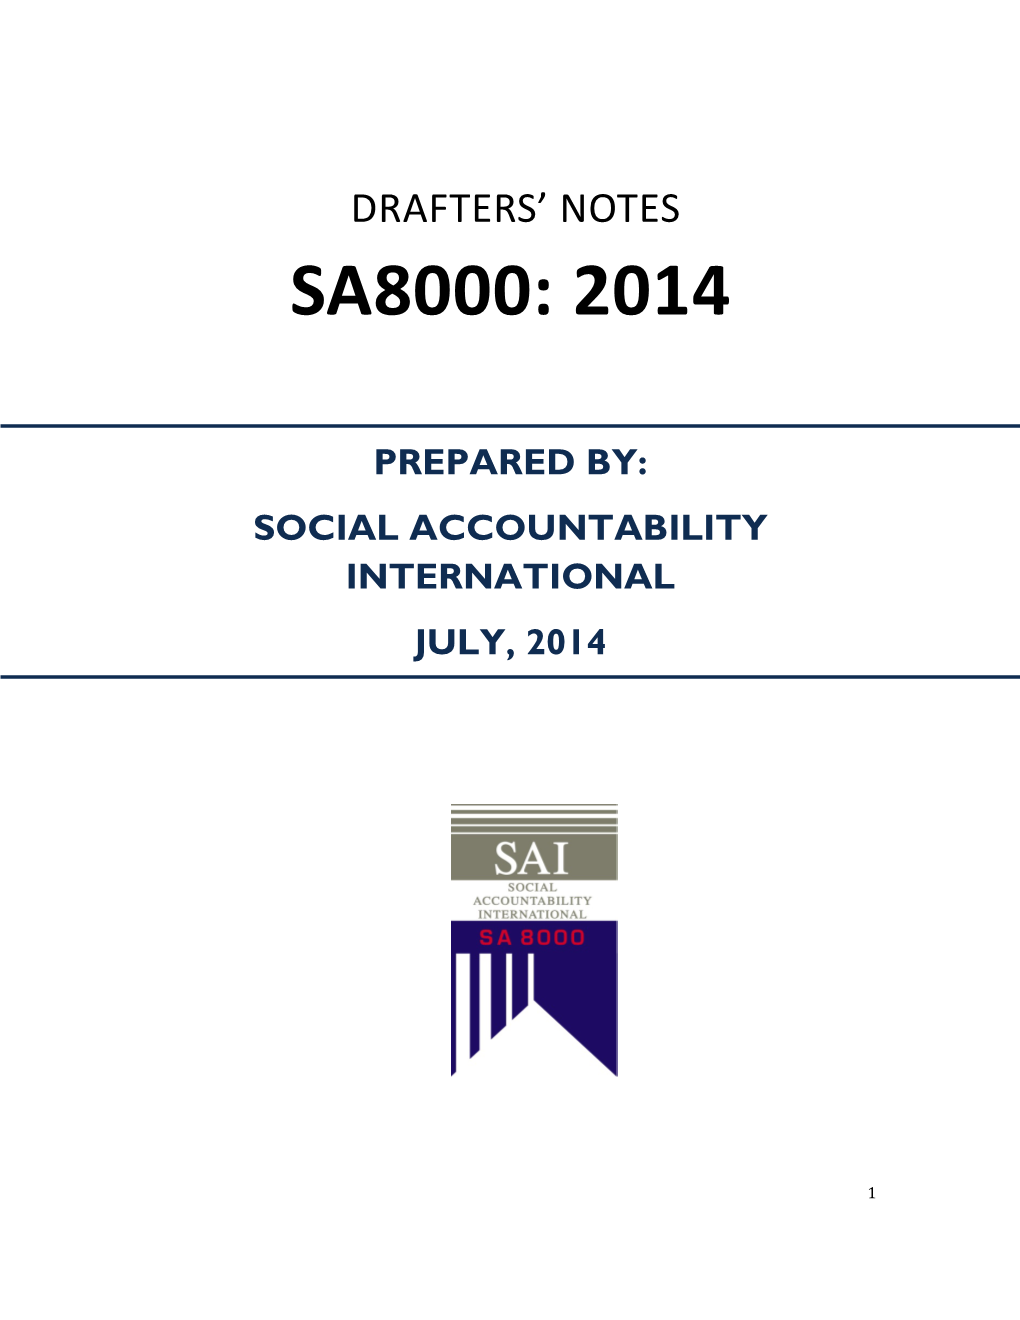 SA8000:2014 Drafters' Notes